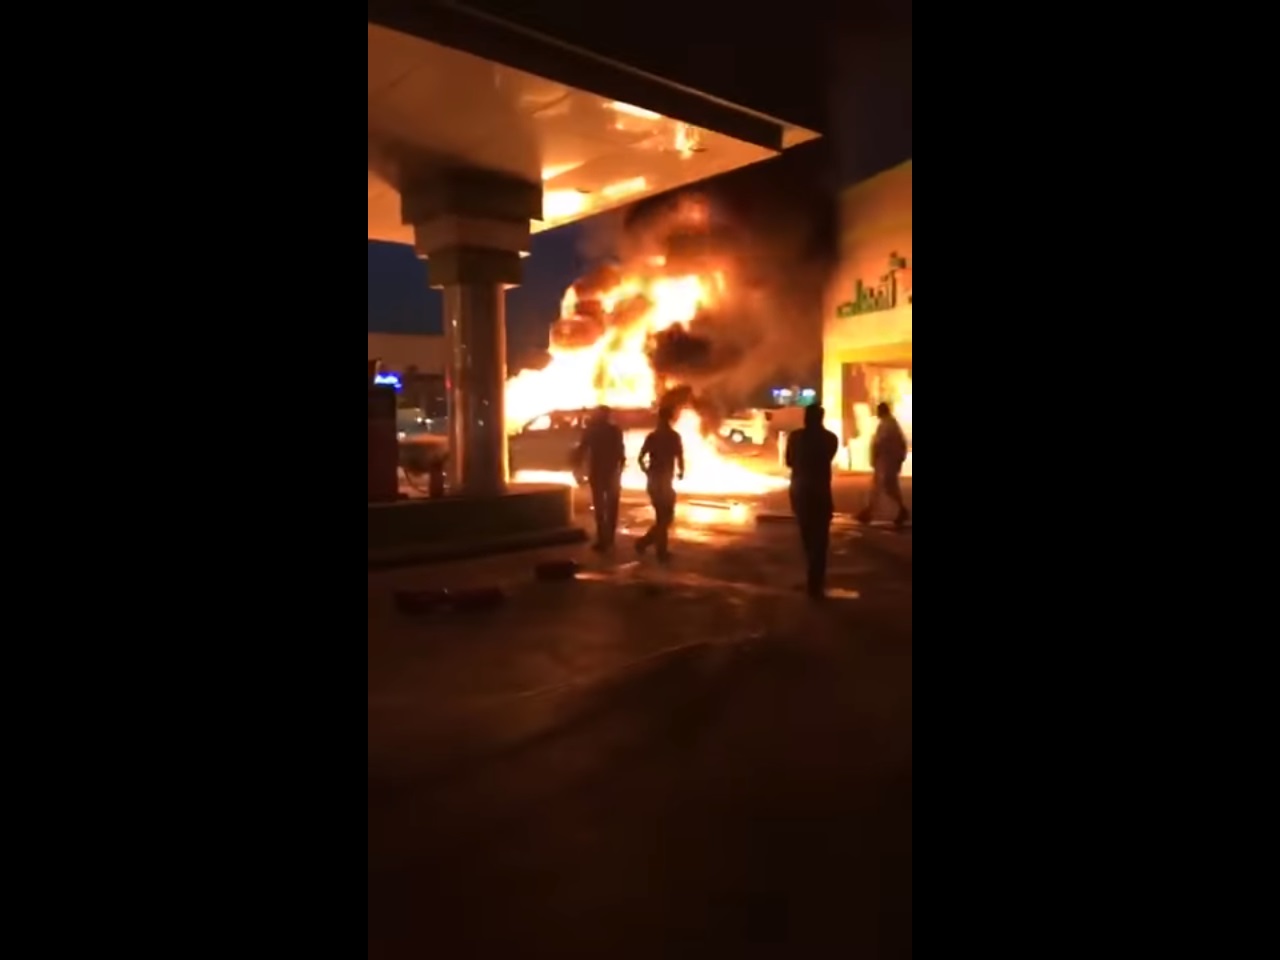 شاهد.. قائد مركبة يتدخل لإبعاد سيارة اشتعلت النيران فيها داخل محطة